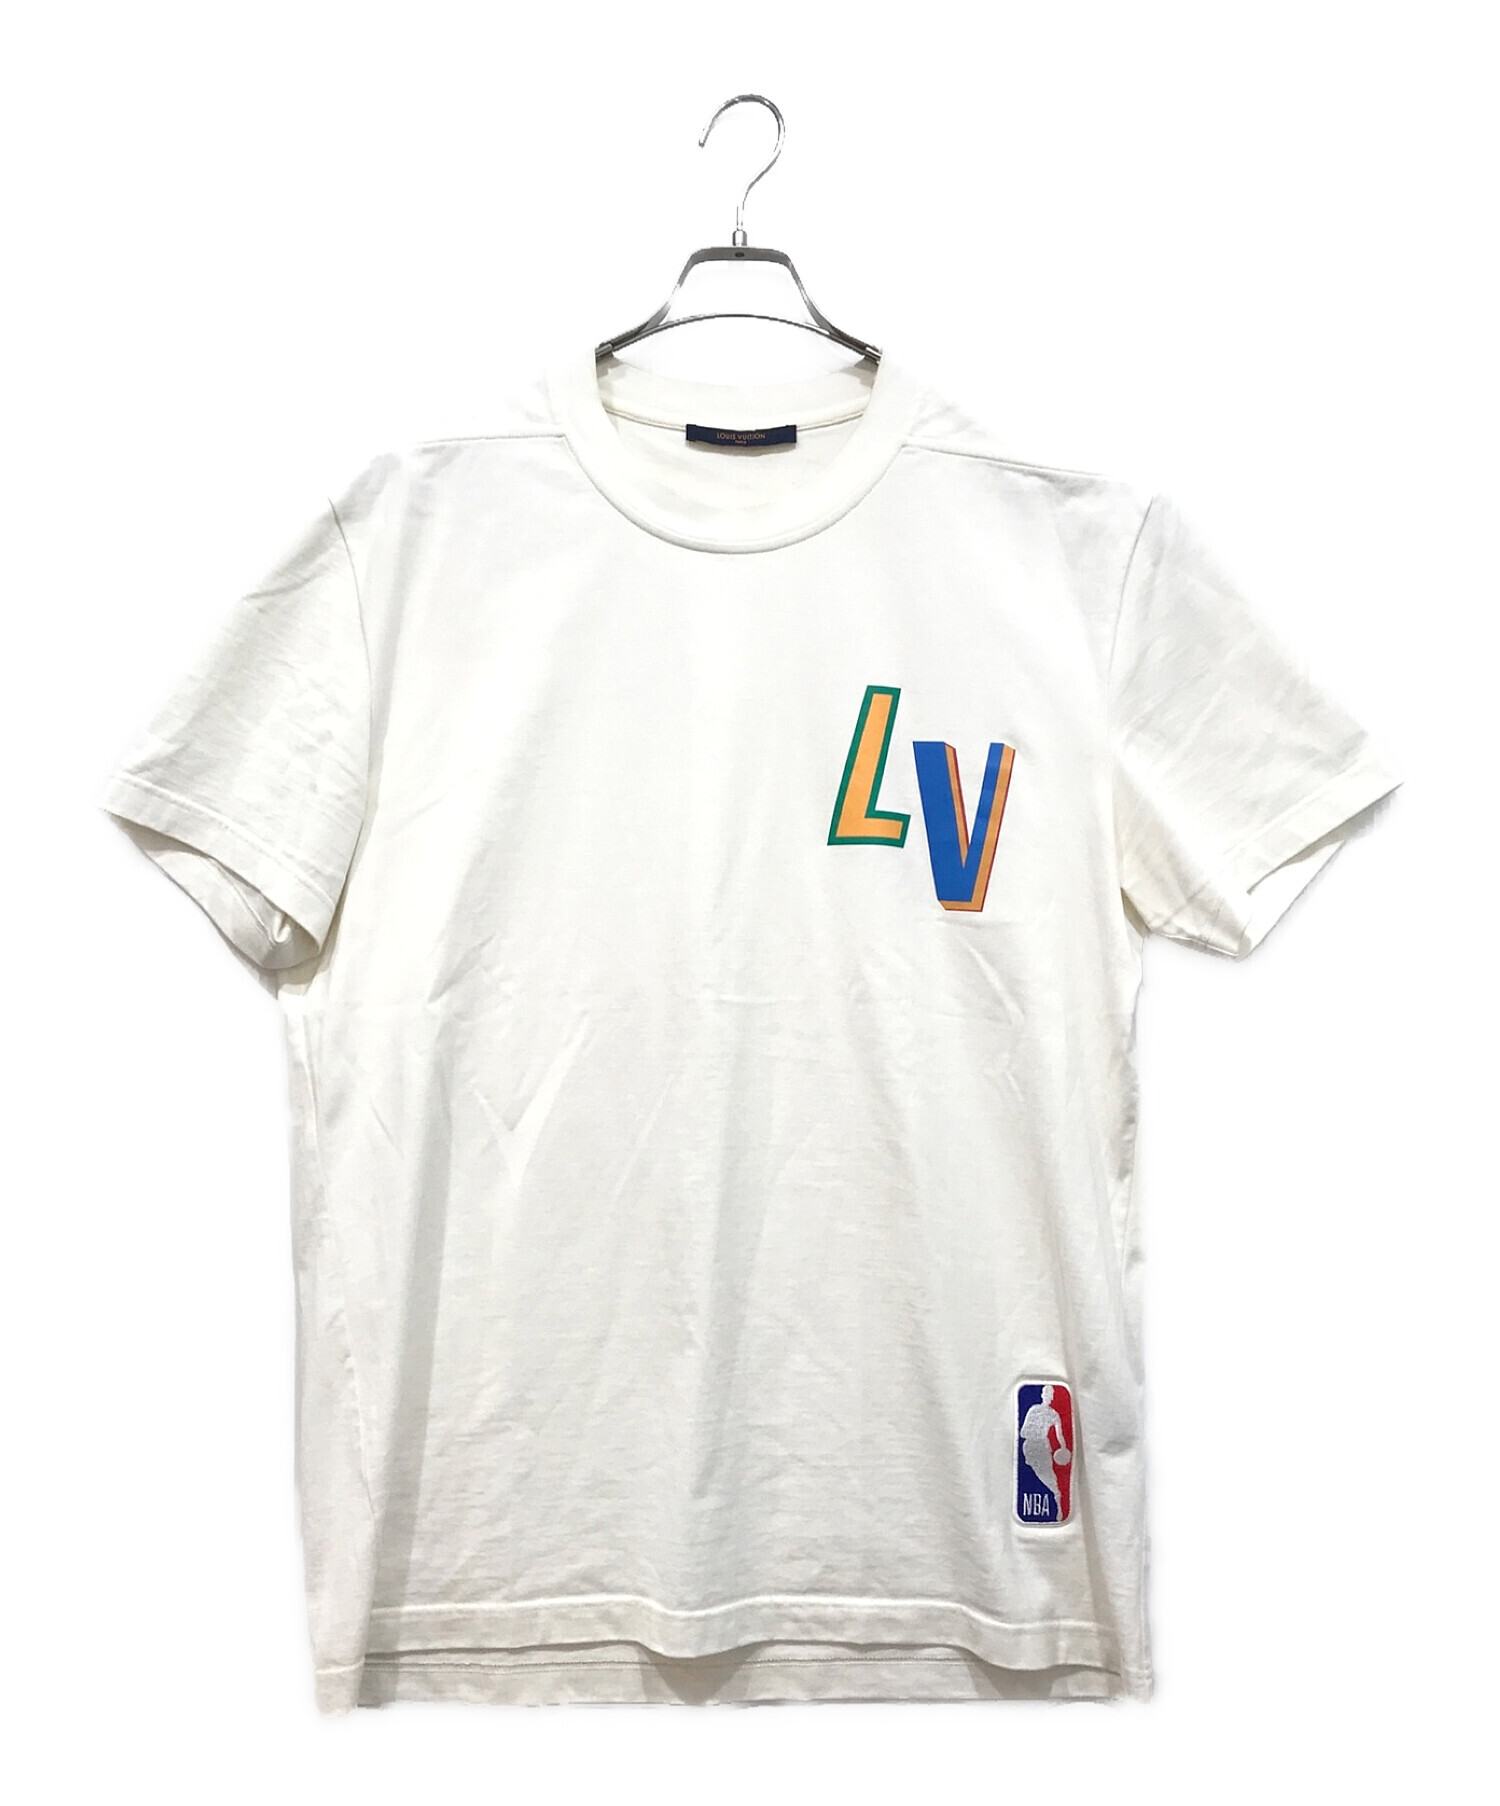 LOUIS VUITTON (ルイ ヴィトン) NBA (エヌビーエー) レタープリントTシャツ ホワイト サイズ:L